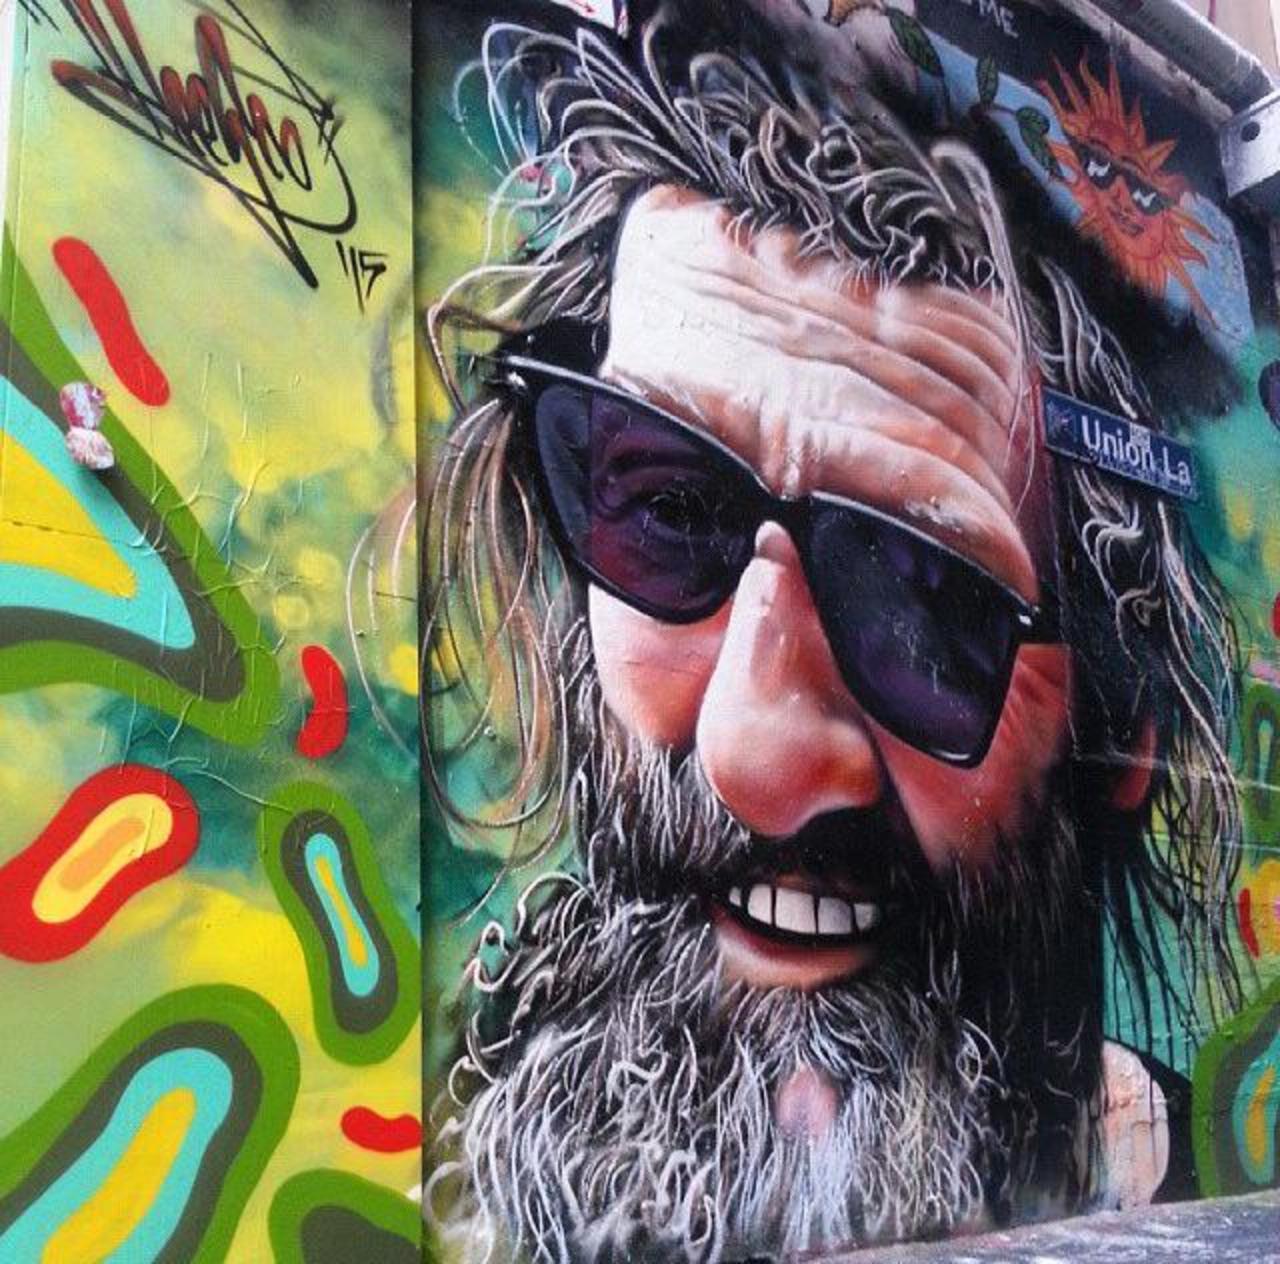 Street Art by Heesco in Melbourne 

#art #arte #graffiti #streetart http://t.co/FwyLNRowWE